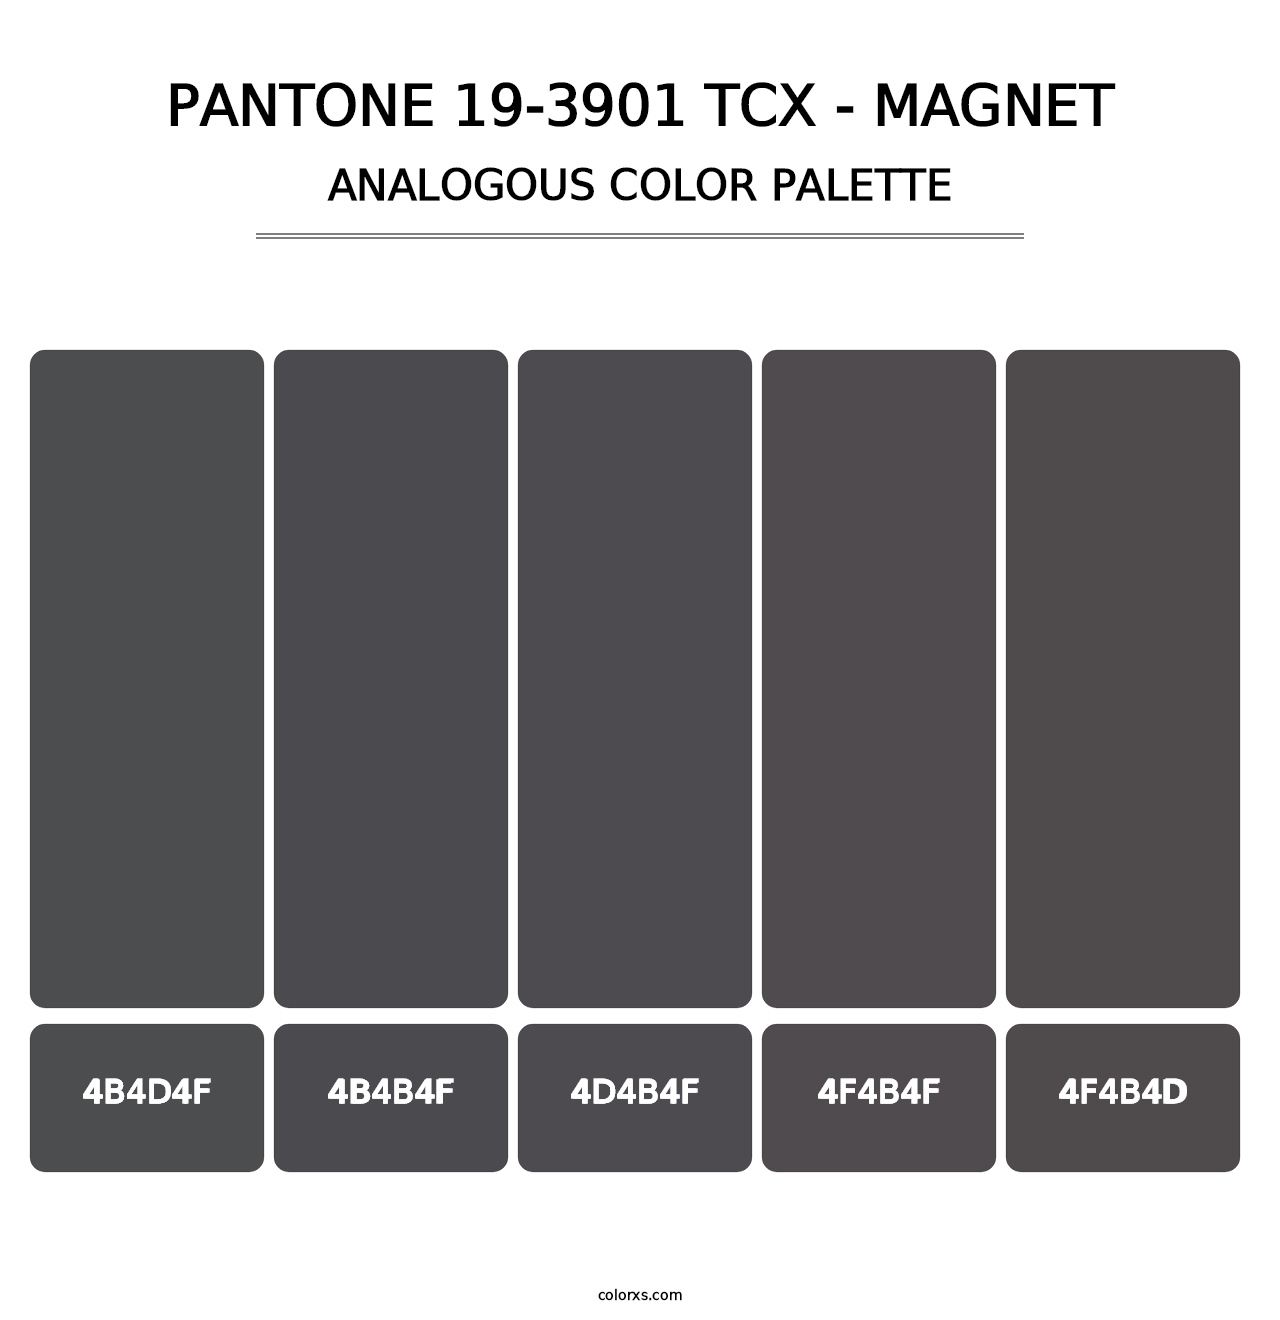 PANTONE 19-3901 TCX - Magnet - Analogous Color Palette